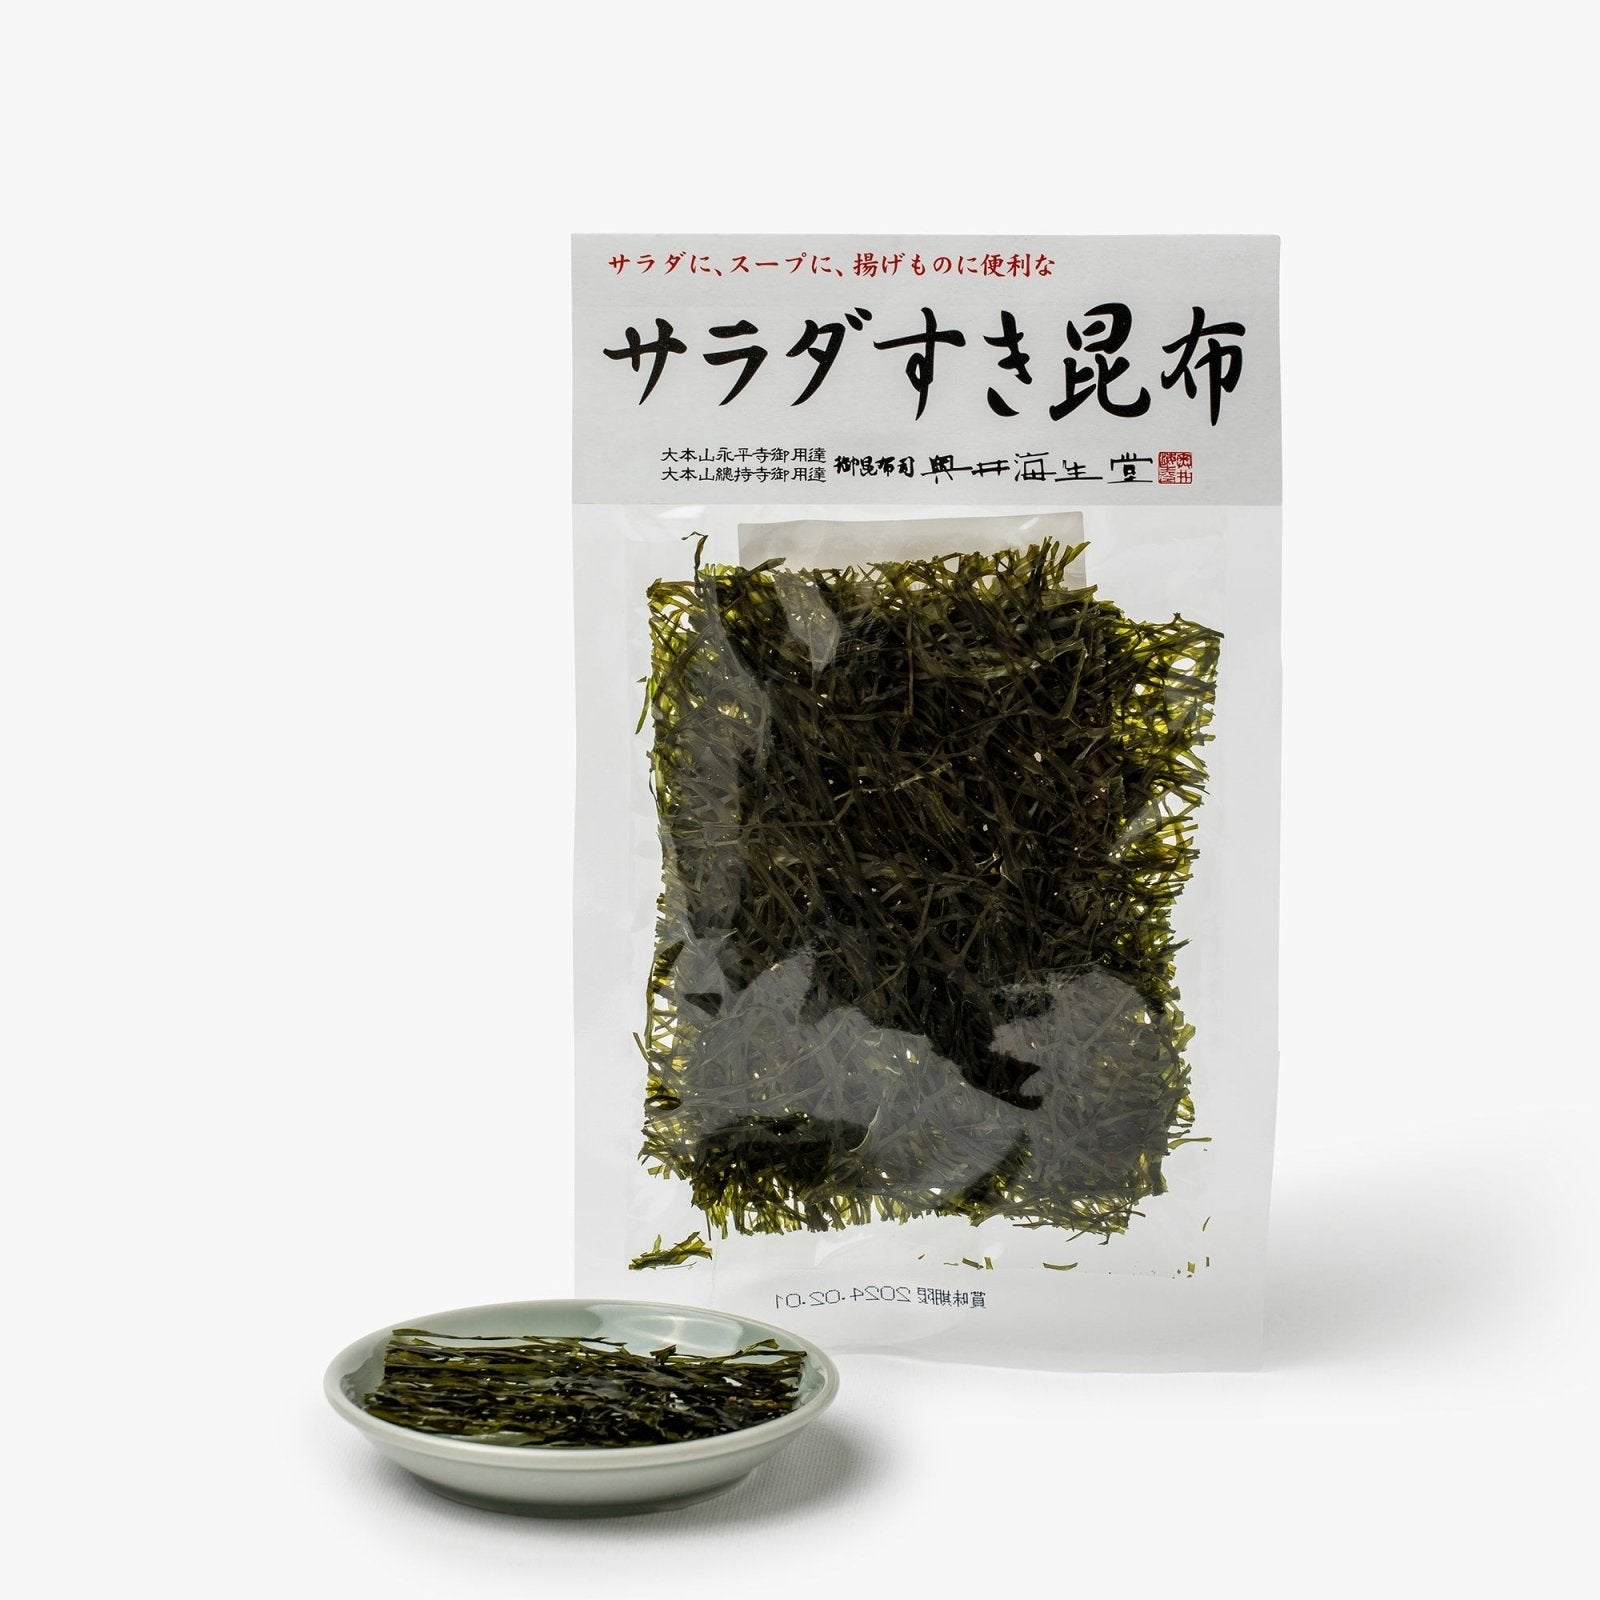 Feuilles d'algue kombu pour salade - 5g - Okui Kaiseido - iRASSHAi